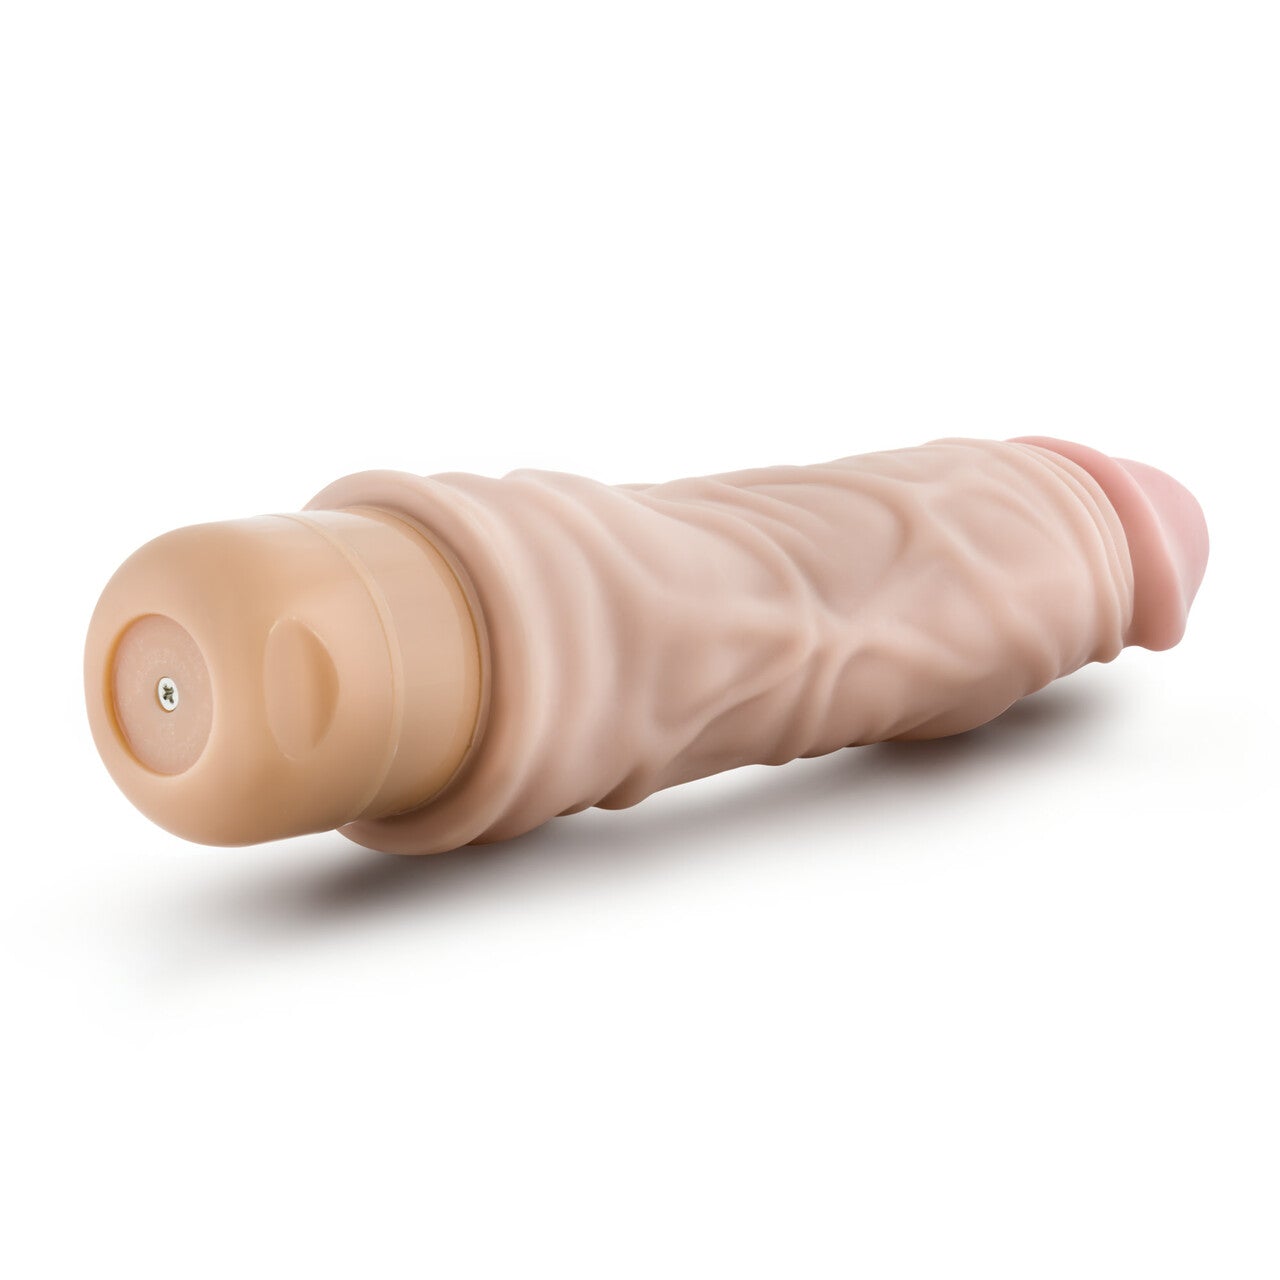 Dr. Skin Vibrating Cock Vibe - 8.5" - Horny Stoner Horny Stoner Toys